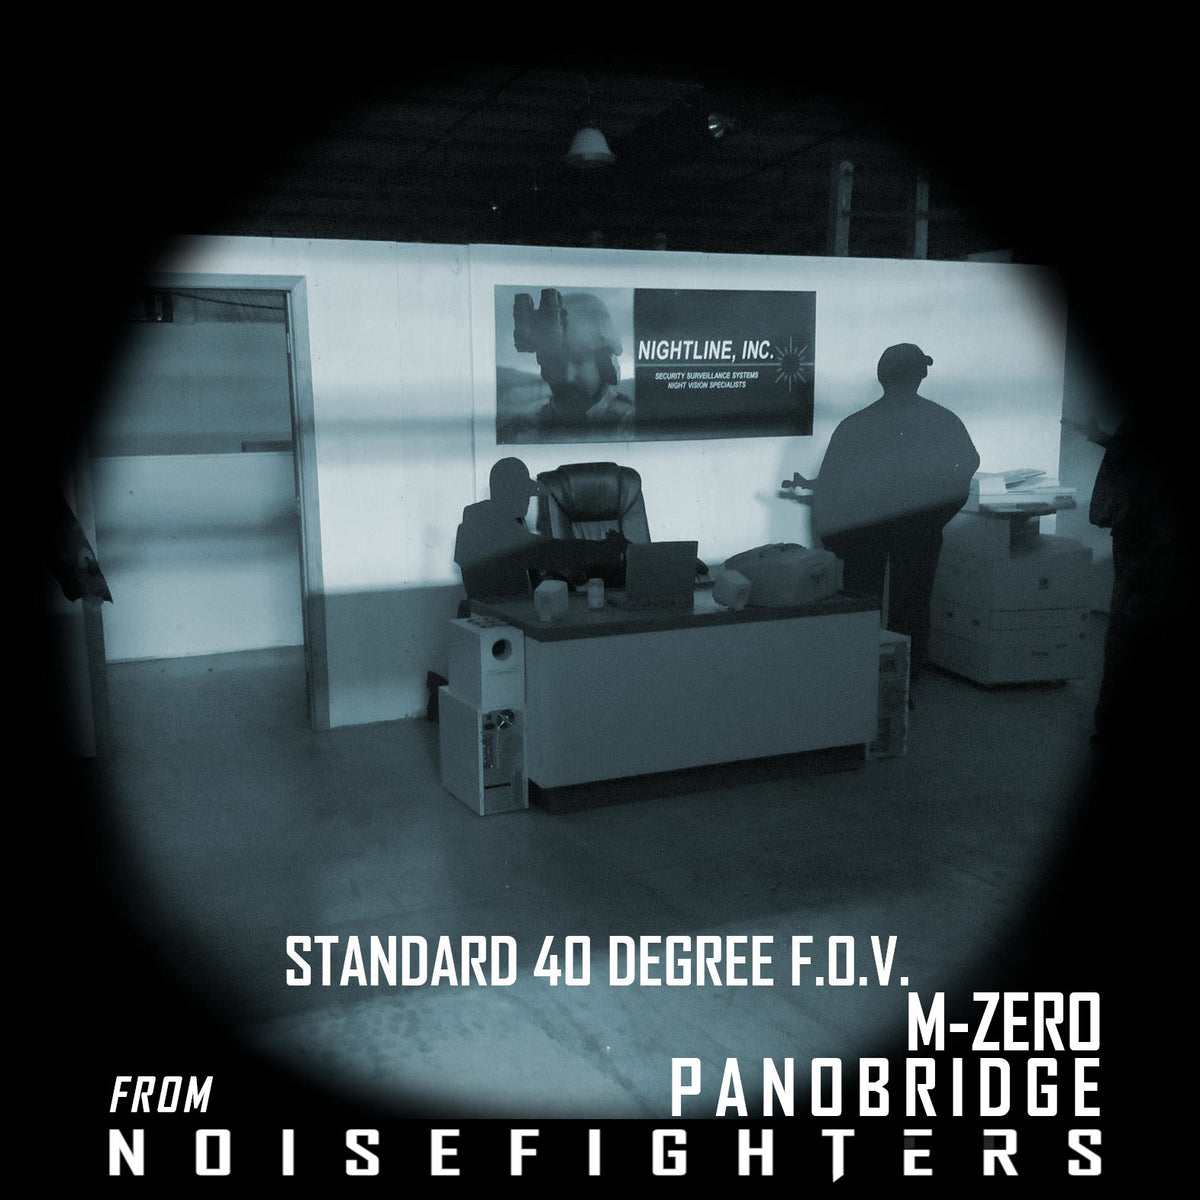 Panobridge M-ZERO | 1.6 oz Metal Night Vision Bridge offering 